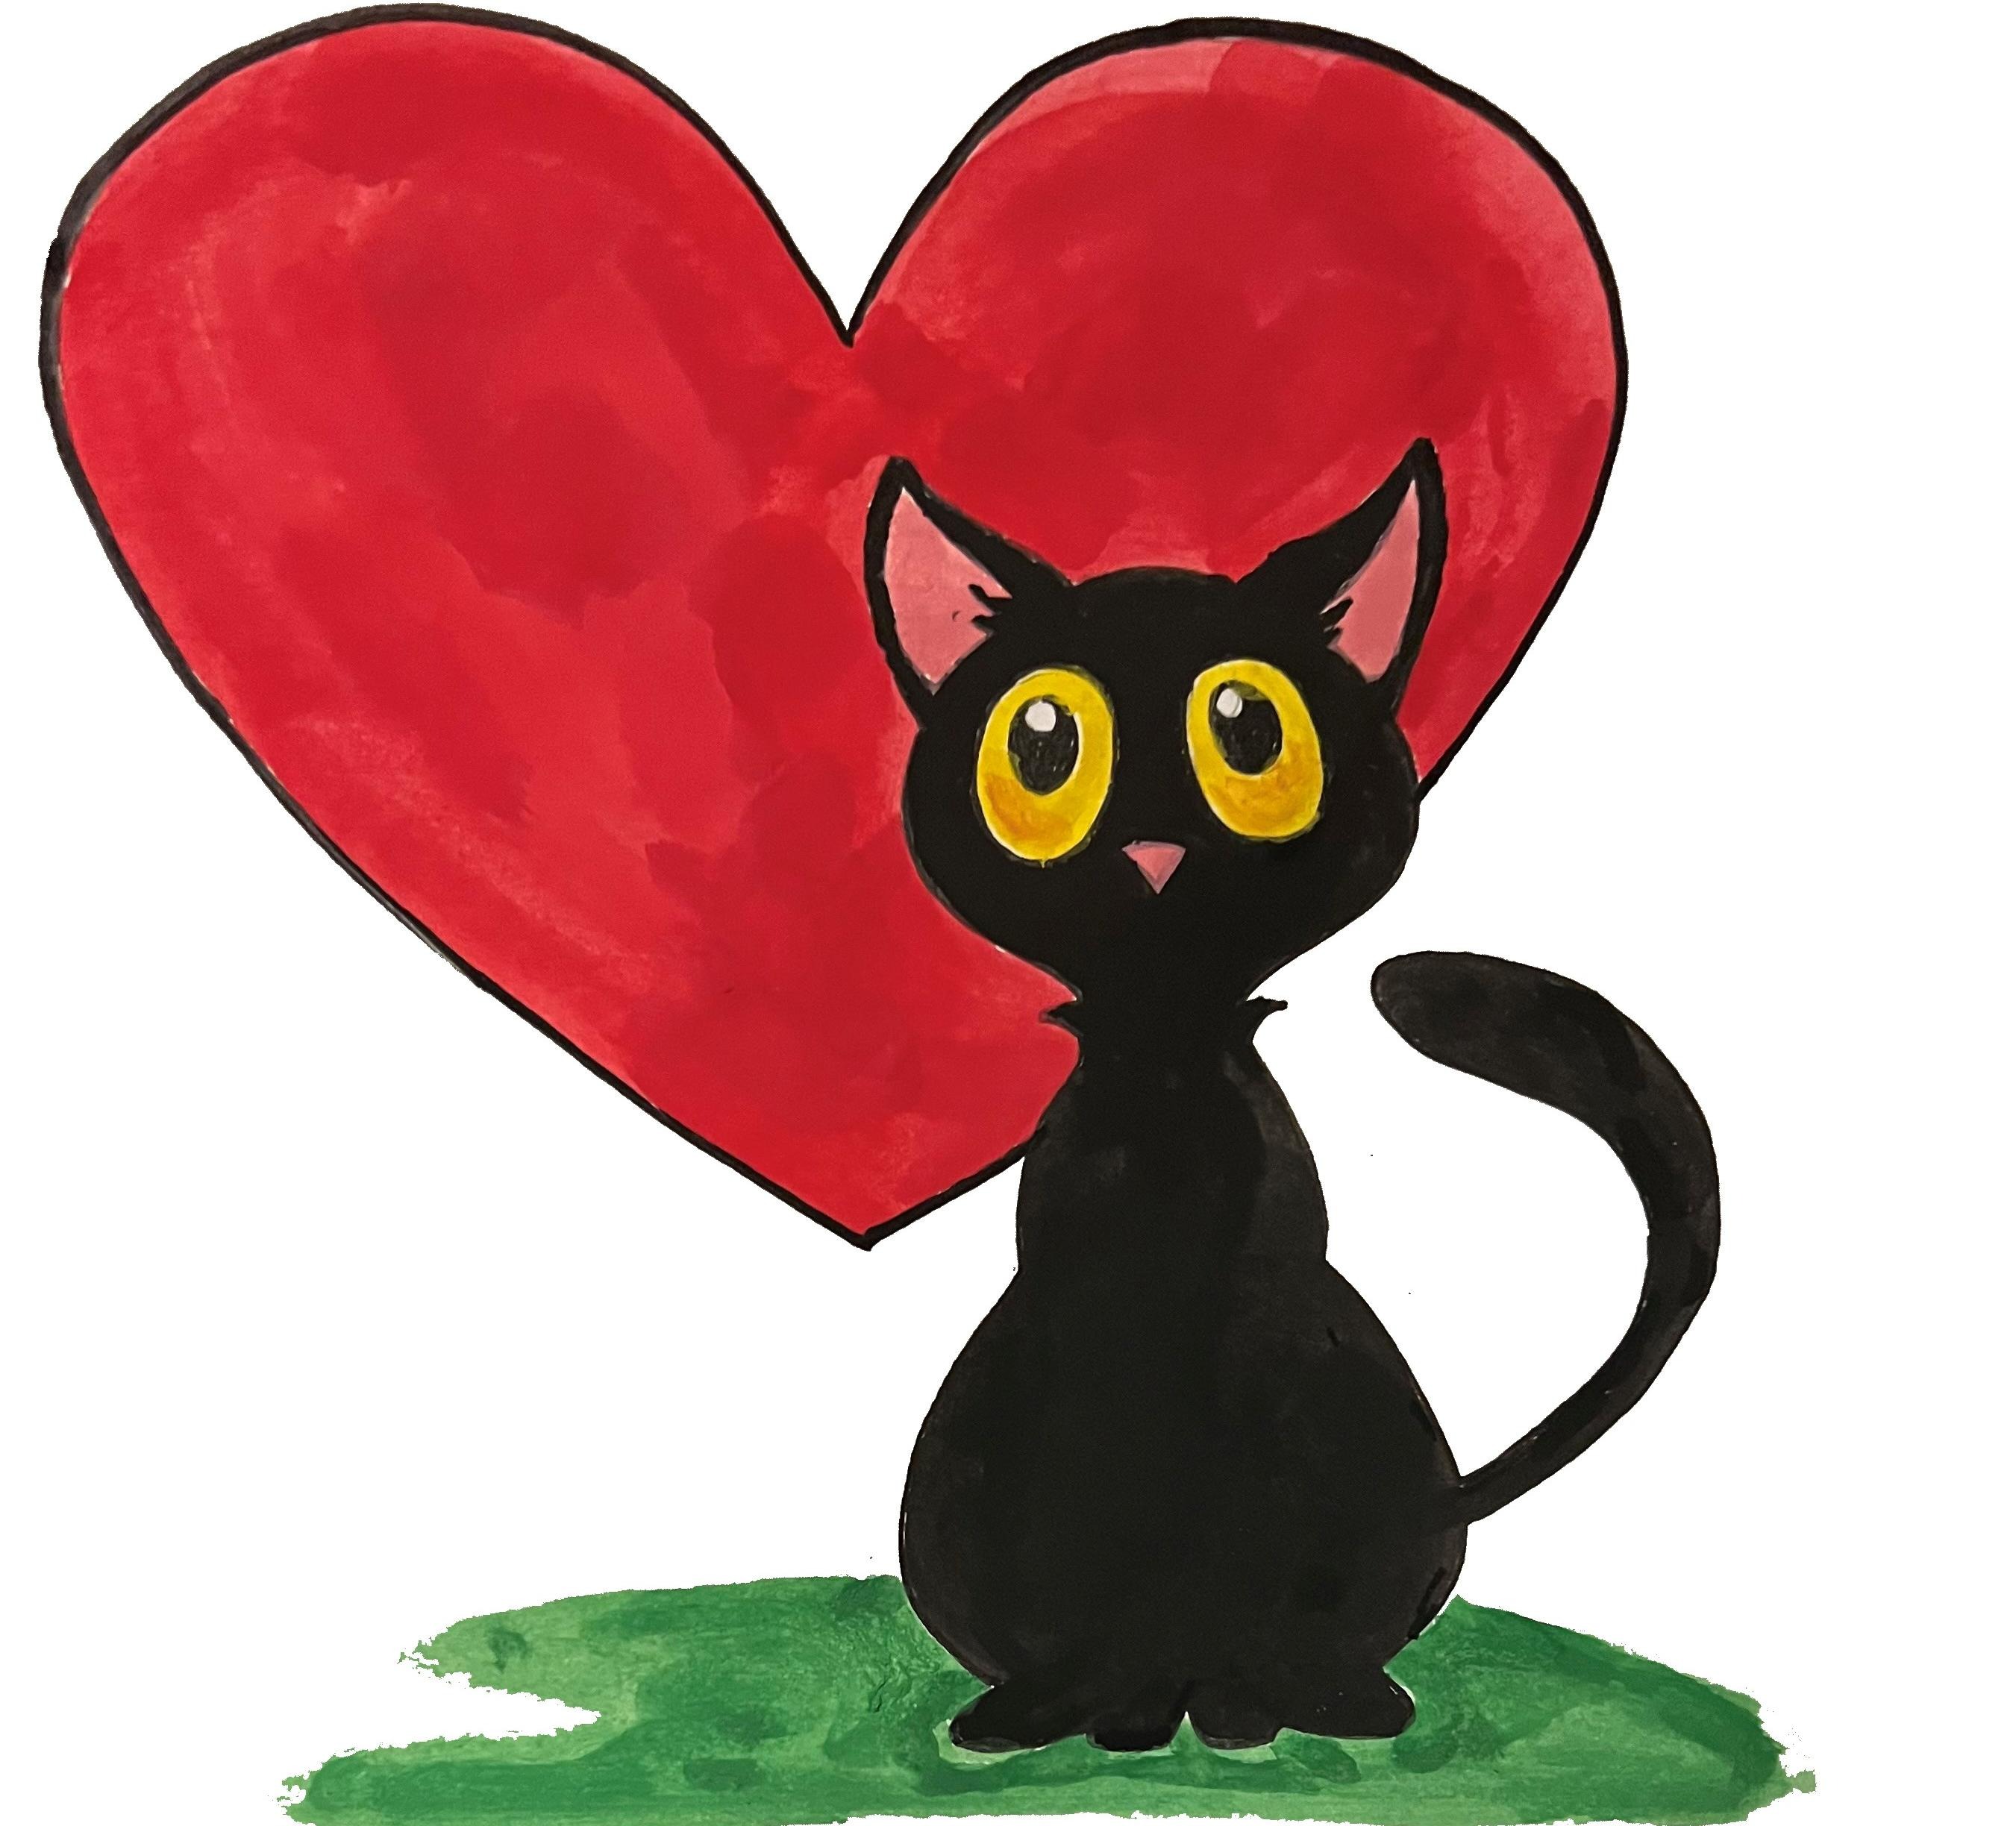 En tecknad bild på en svart katt med stora ögon framför ett stort rött hjärta